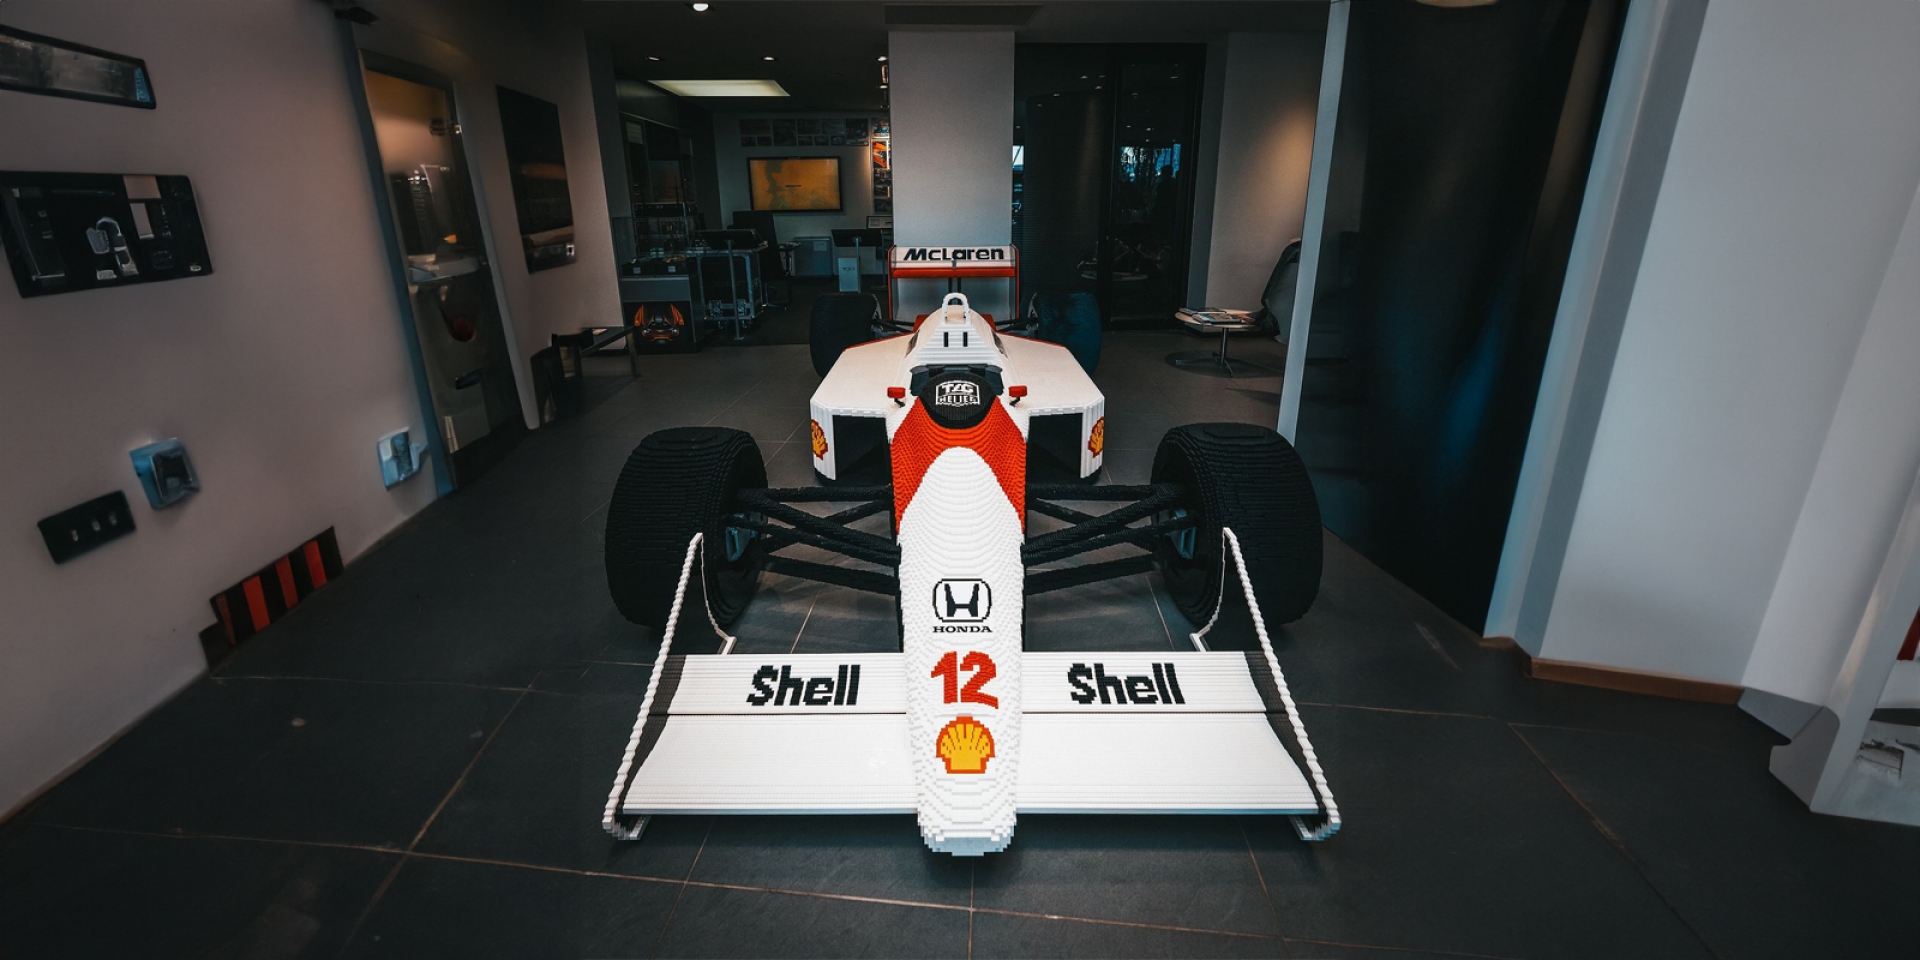 致敬傳奇車手！ LEGO 打造真車尺寸 McLaren MP4/4 F1 賽車